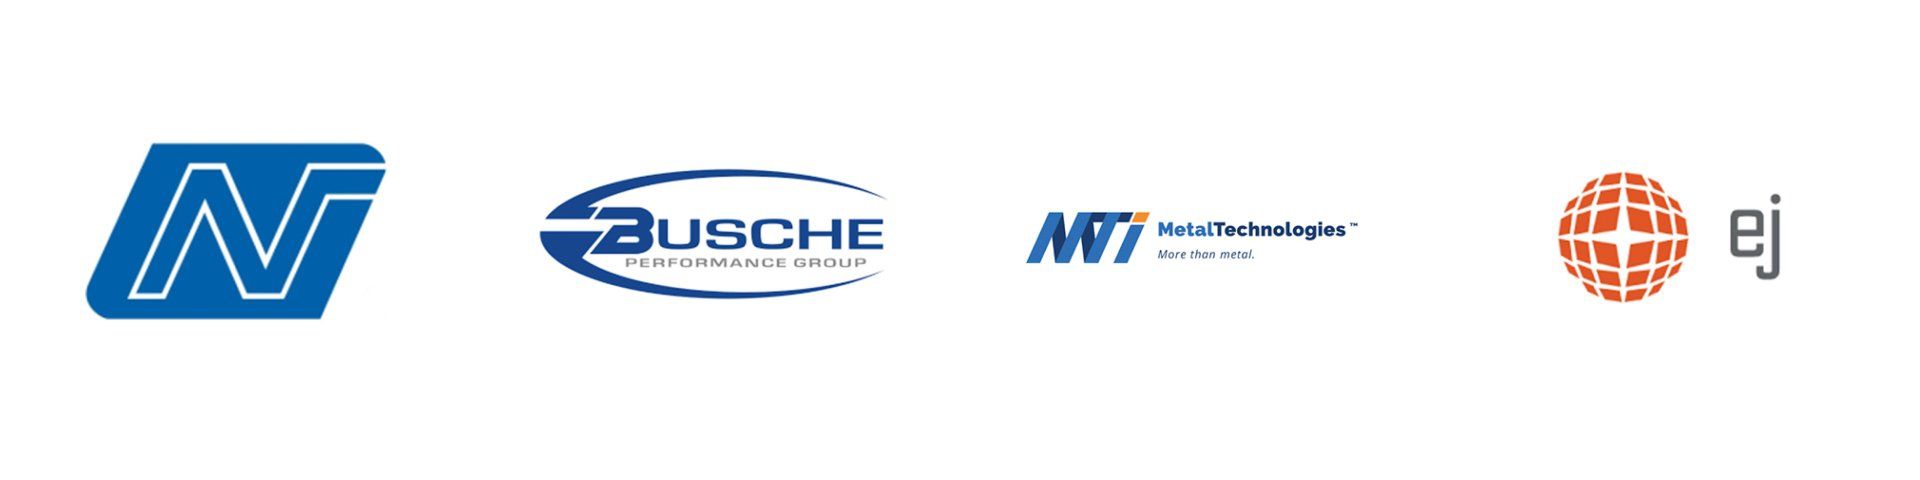 N, Buschem Metal Technologies, and EJ Logos